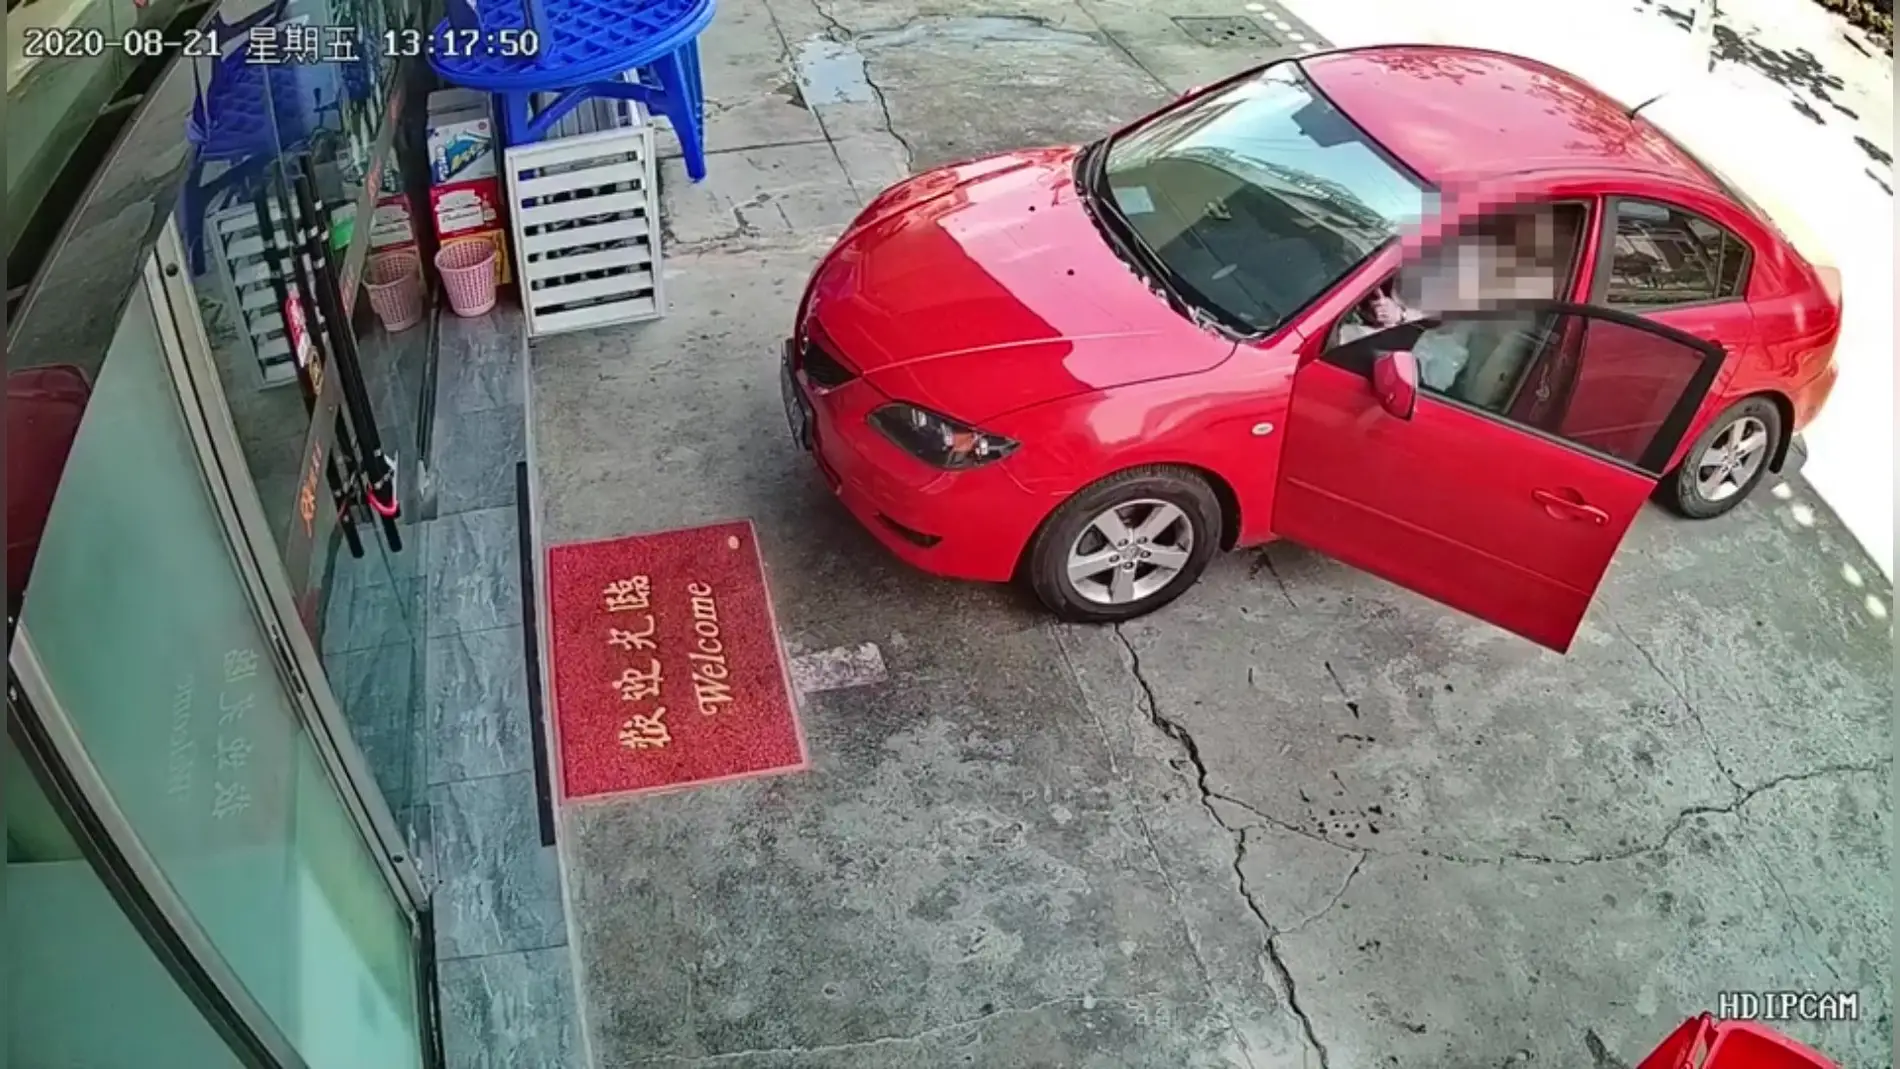 Una mujer se choca contra un restaurante al confundirse y pisar el acelerador